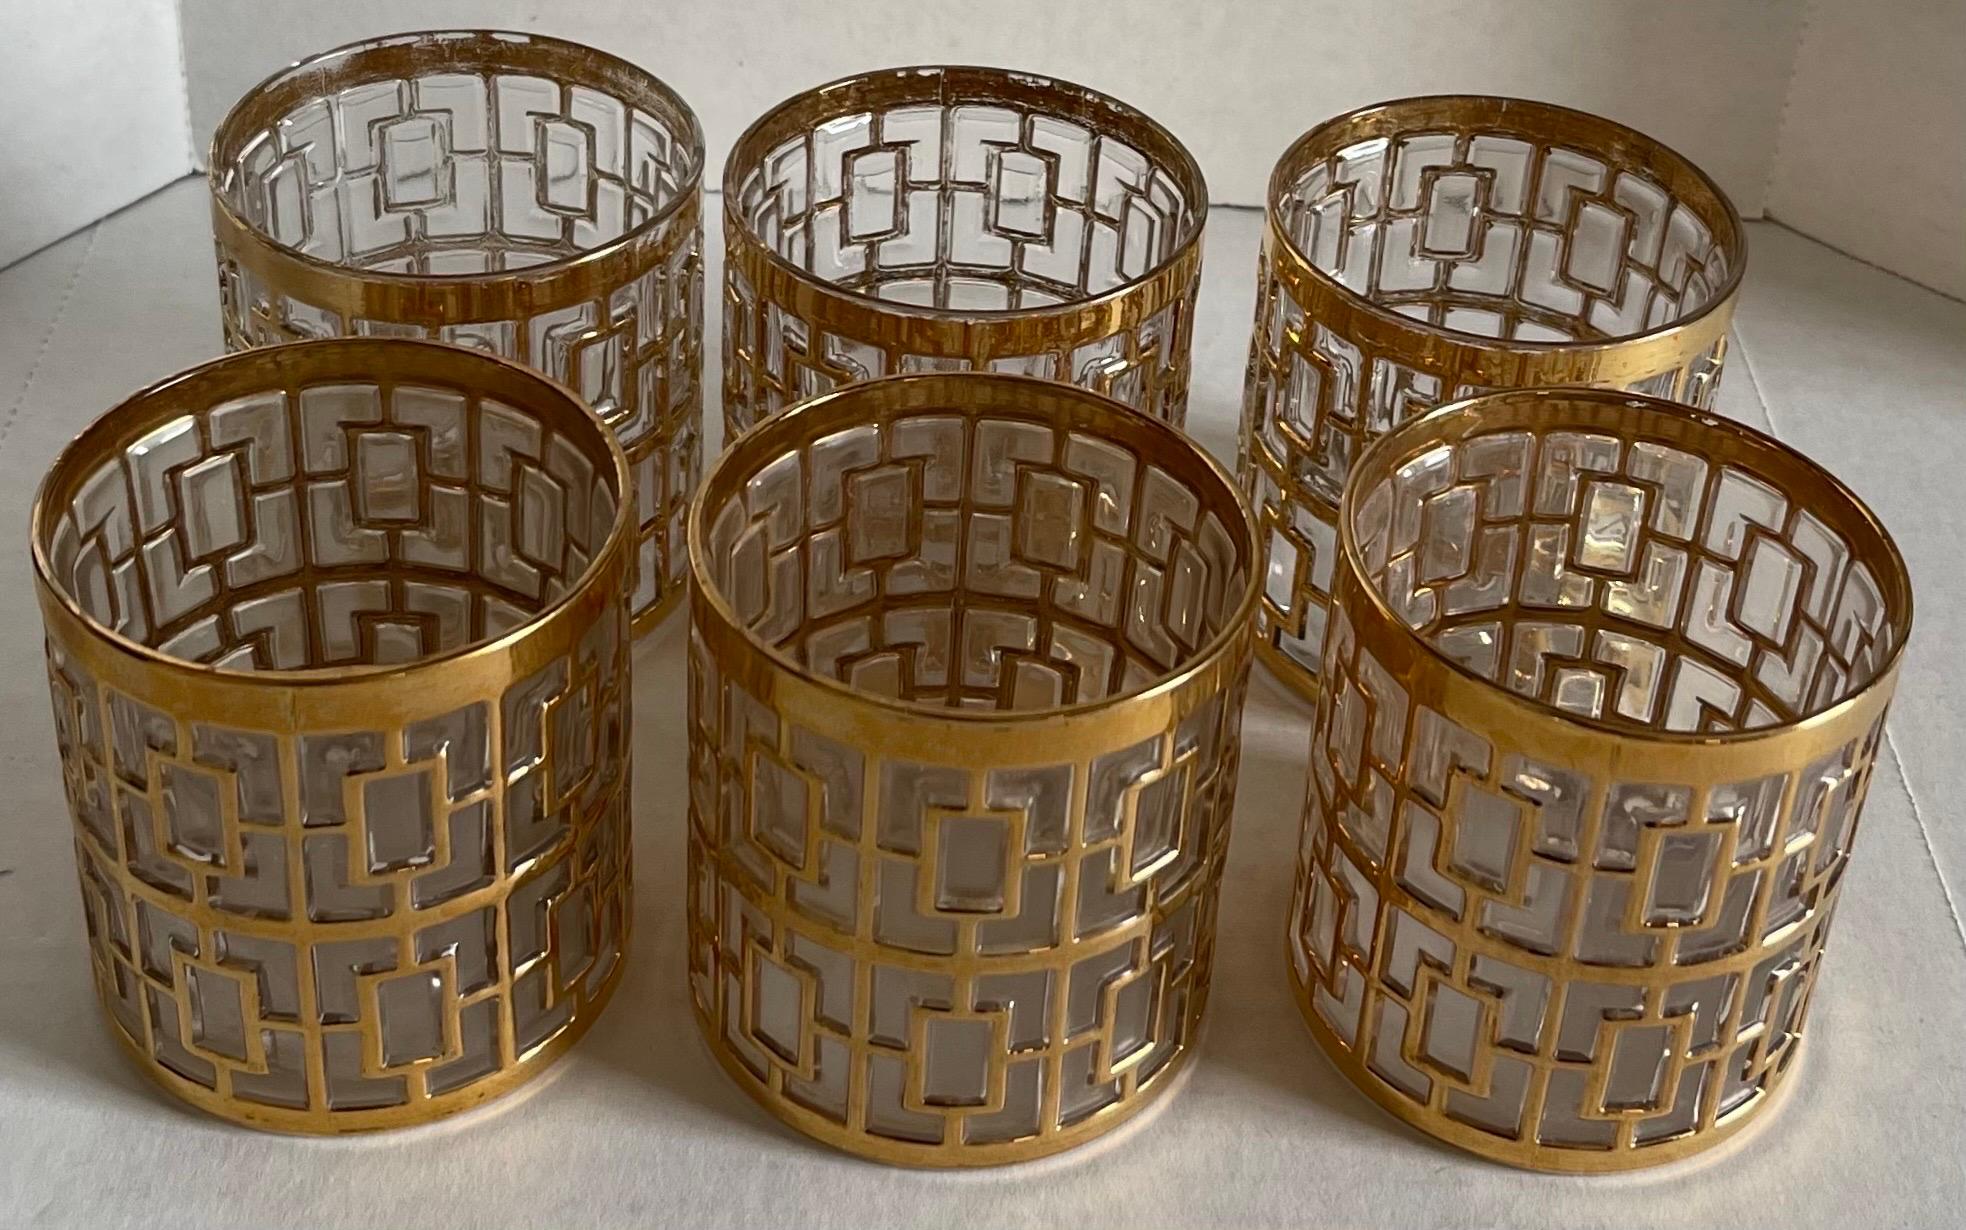 Satz von 6 kleinen Imperial Shoji Saki-Gläsern. Insgesamt erhabenes geometrisches Design mit 22-karätigem Gold. Jedes Glas misst 2,75